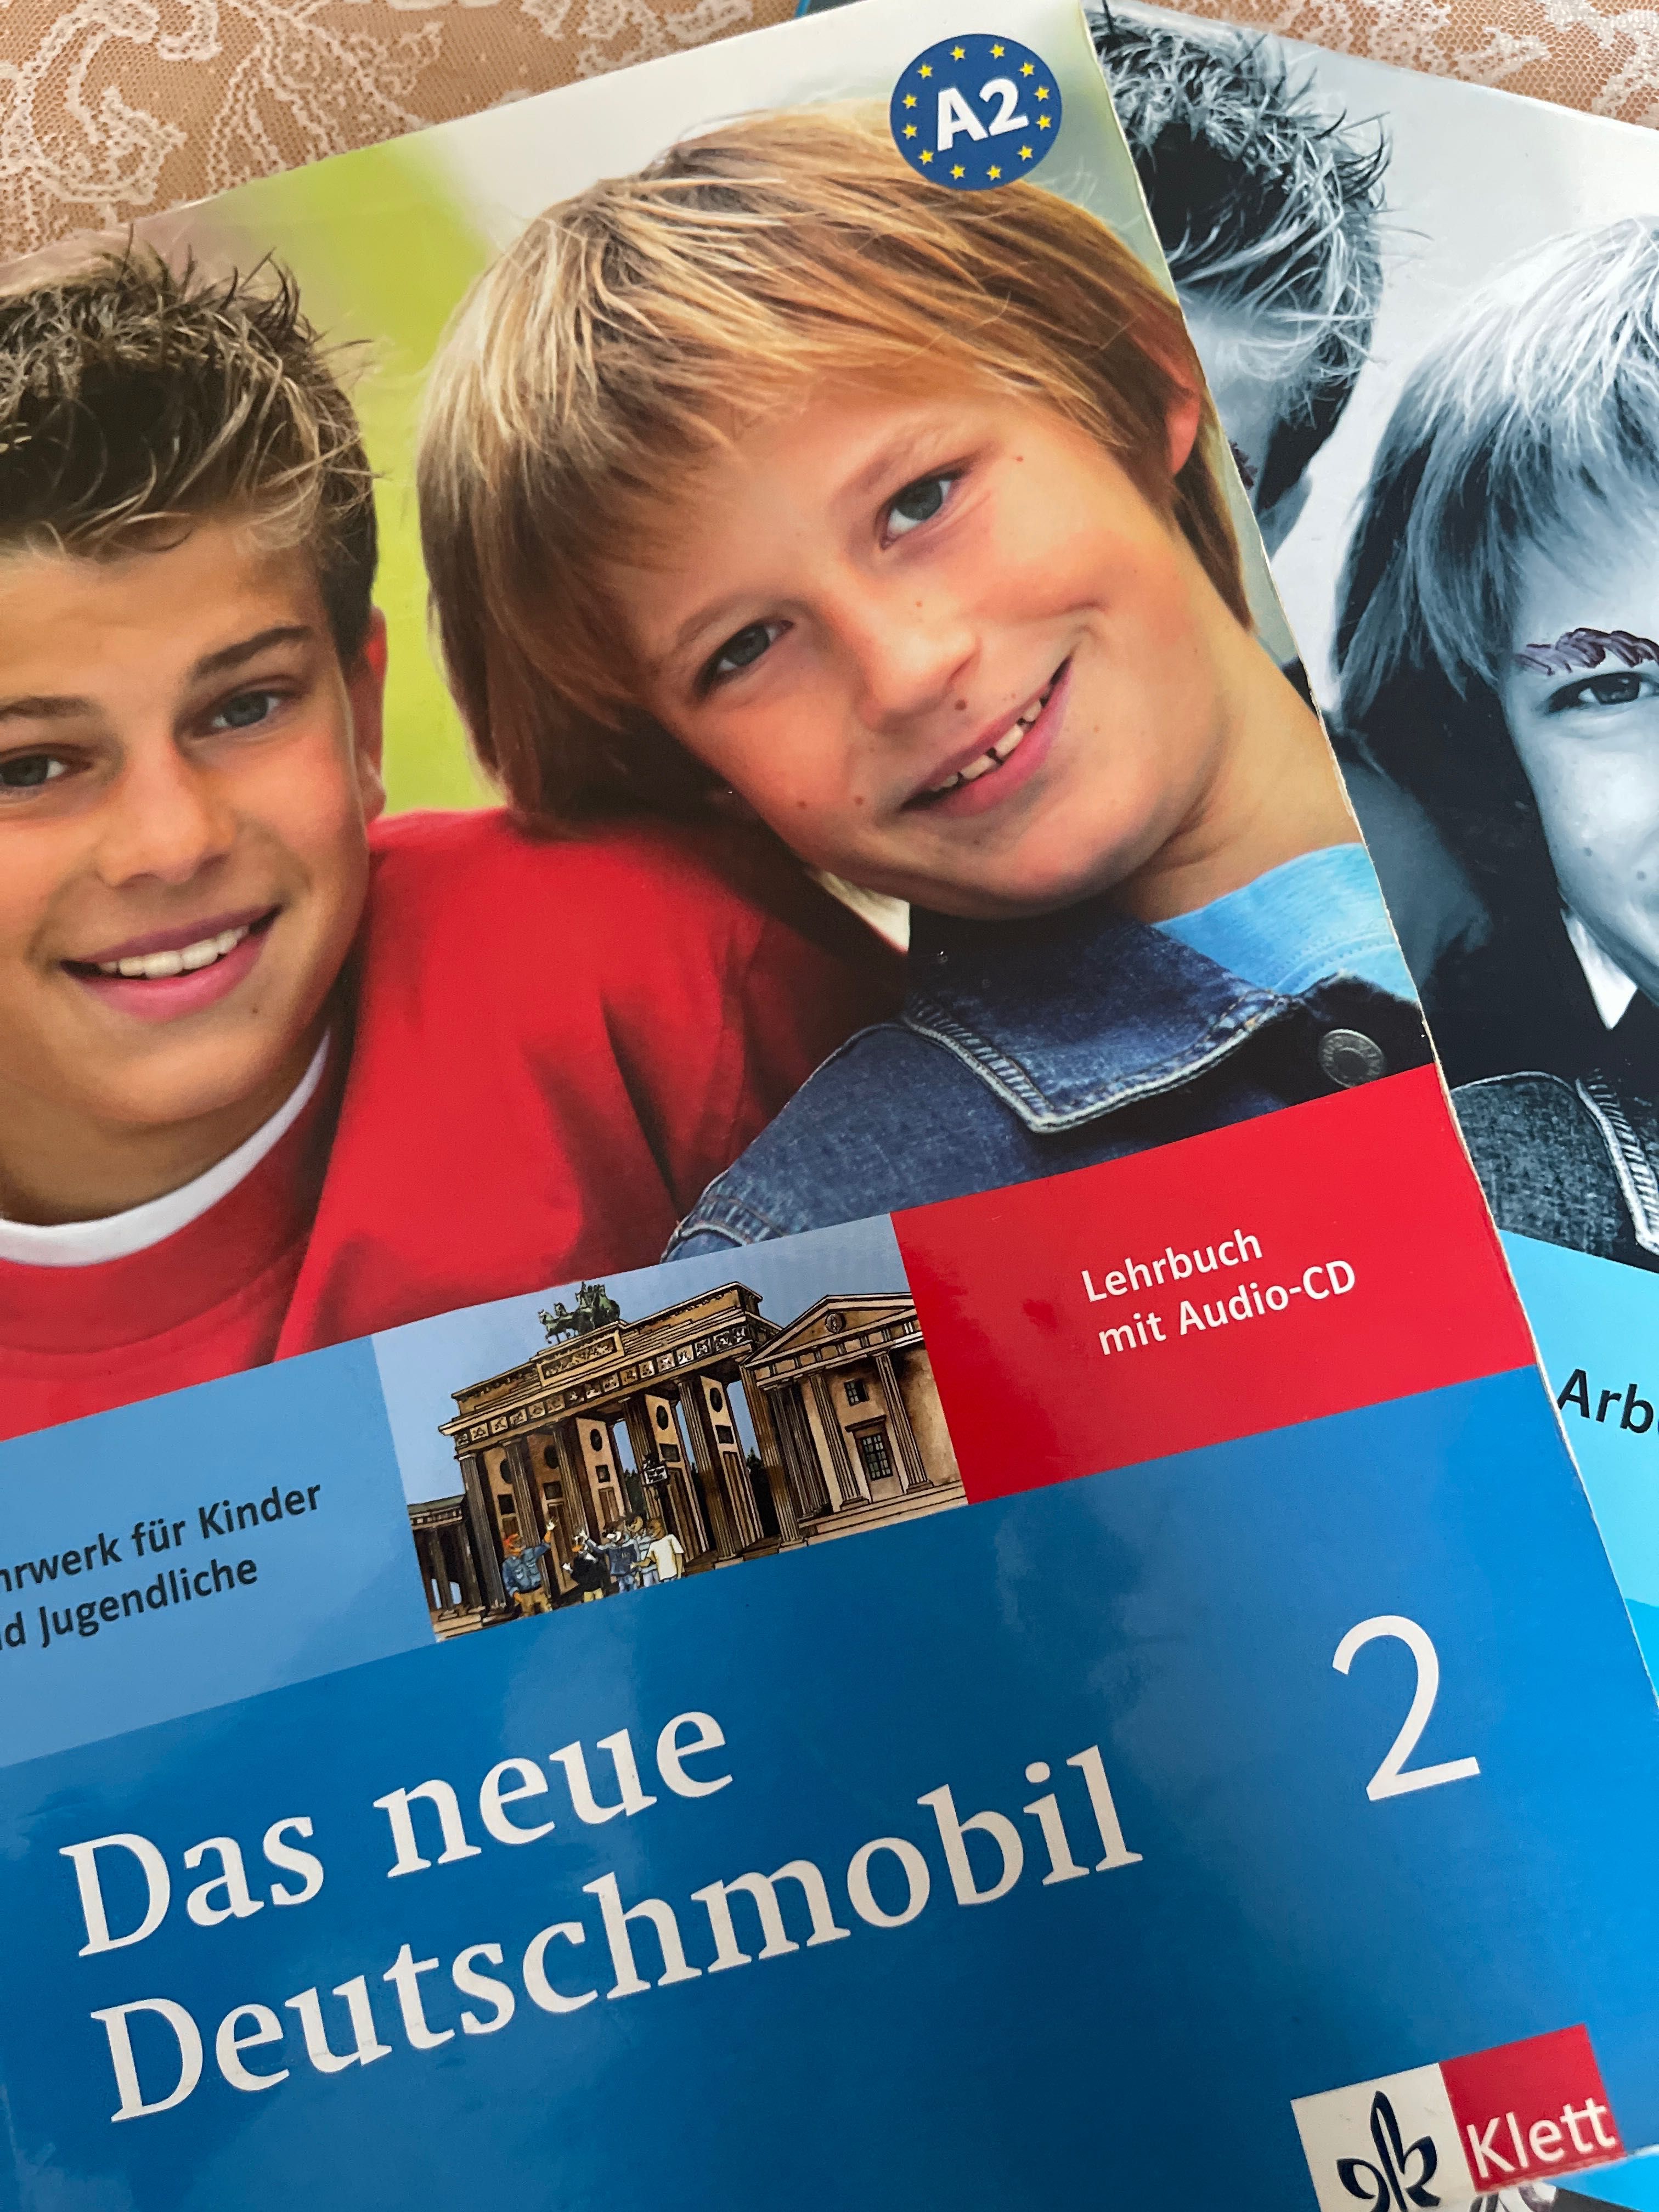 Учебники для детей немецкий A2 das neue deutschmobil 2